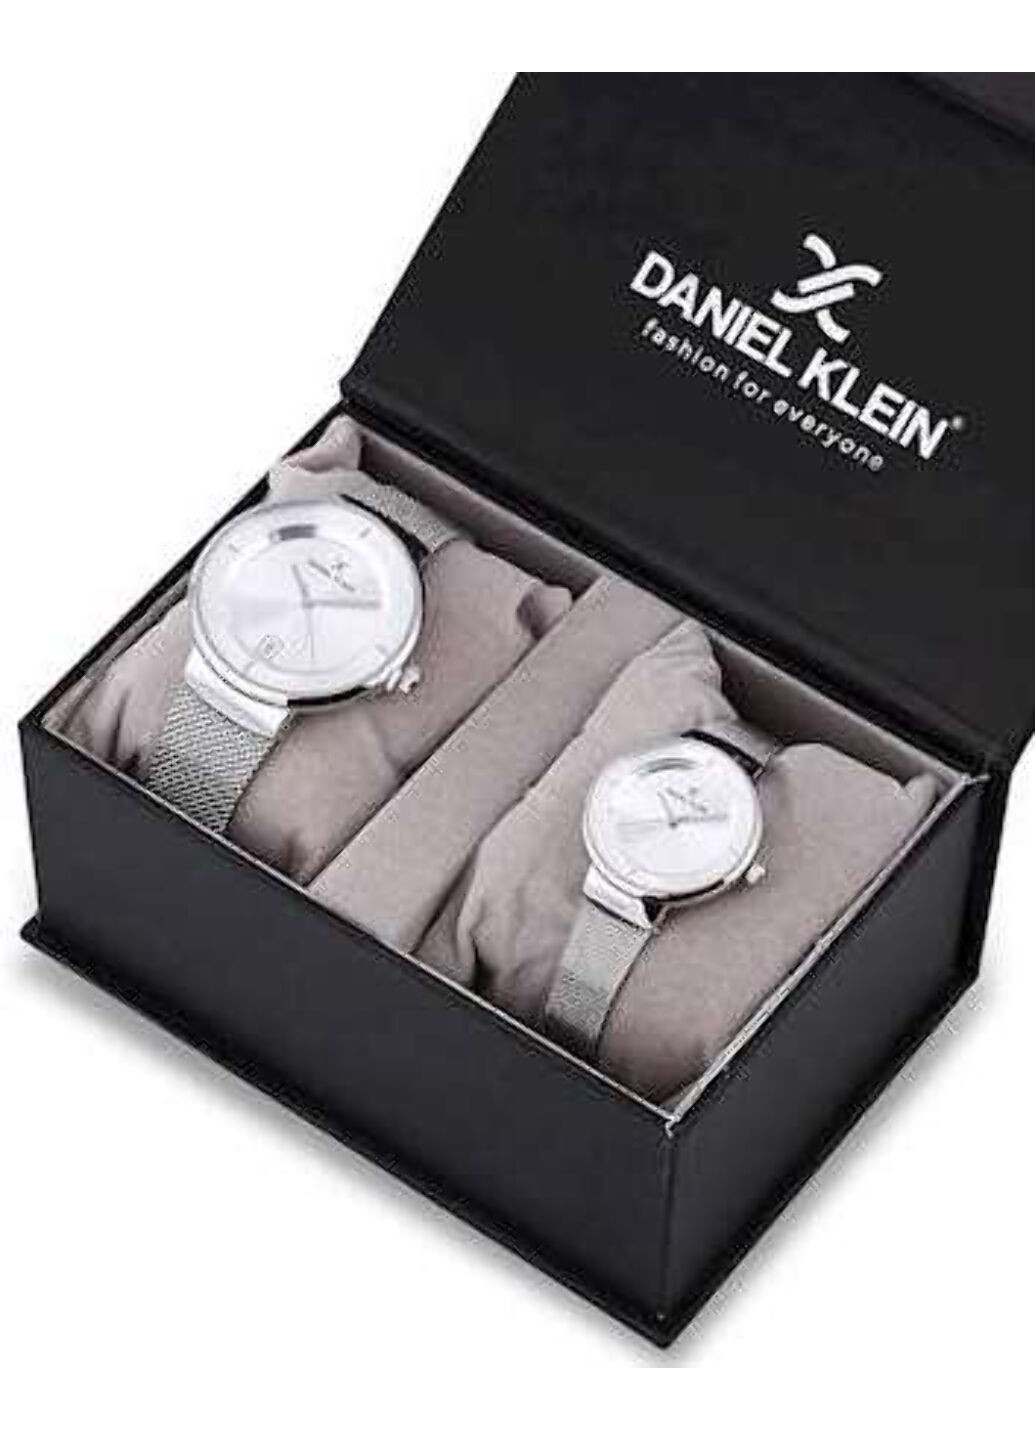 Часы наручные Daniel Klein dk12241-1 набор 2-е часов (мужские & женские) (250601273)